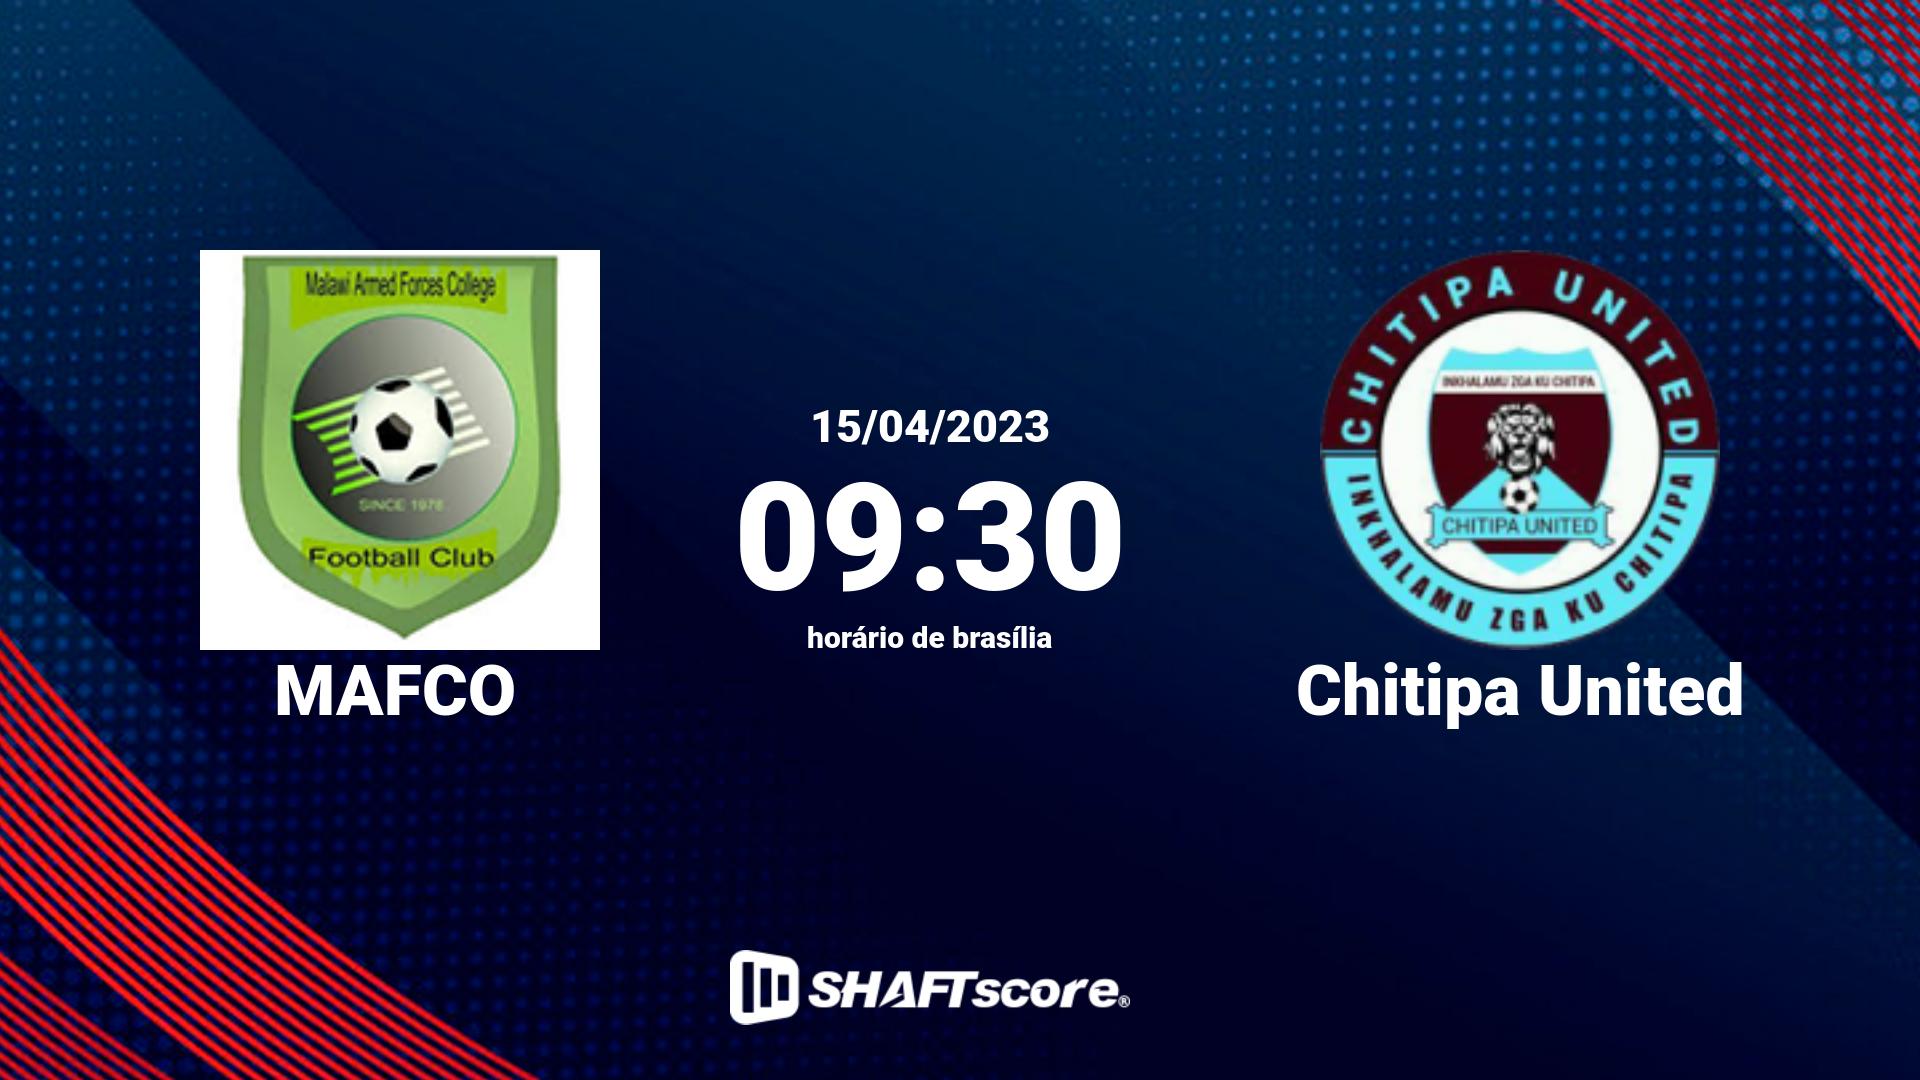 Estatísticas do jogo MAFCO vs Chitipa United 15.04 09:30